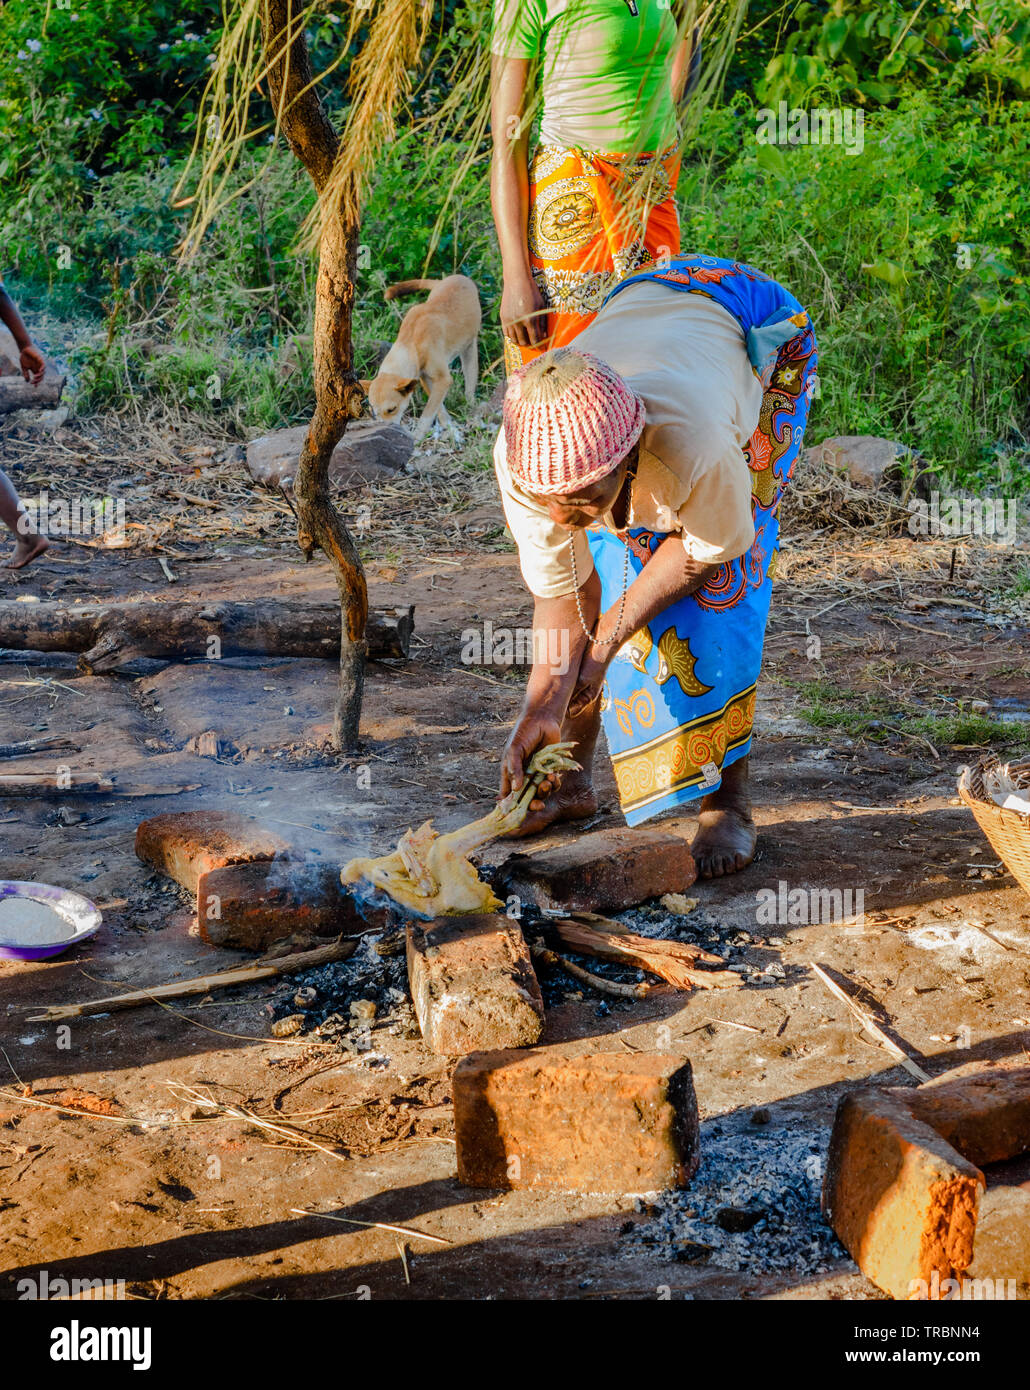 Eine malawische Frau kocht ein ganzes Huhn über einem offenen Feuer halten Sie durch seine Beine in der Flamme Stockfoto